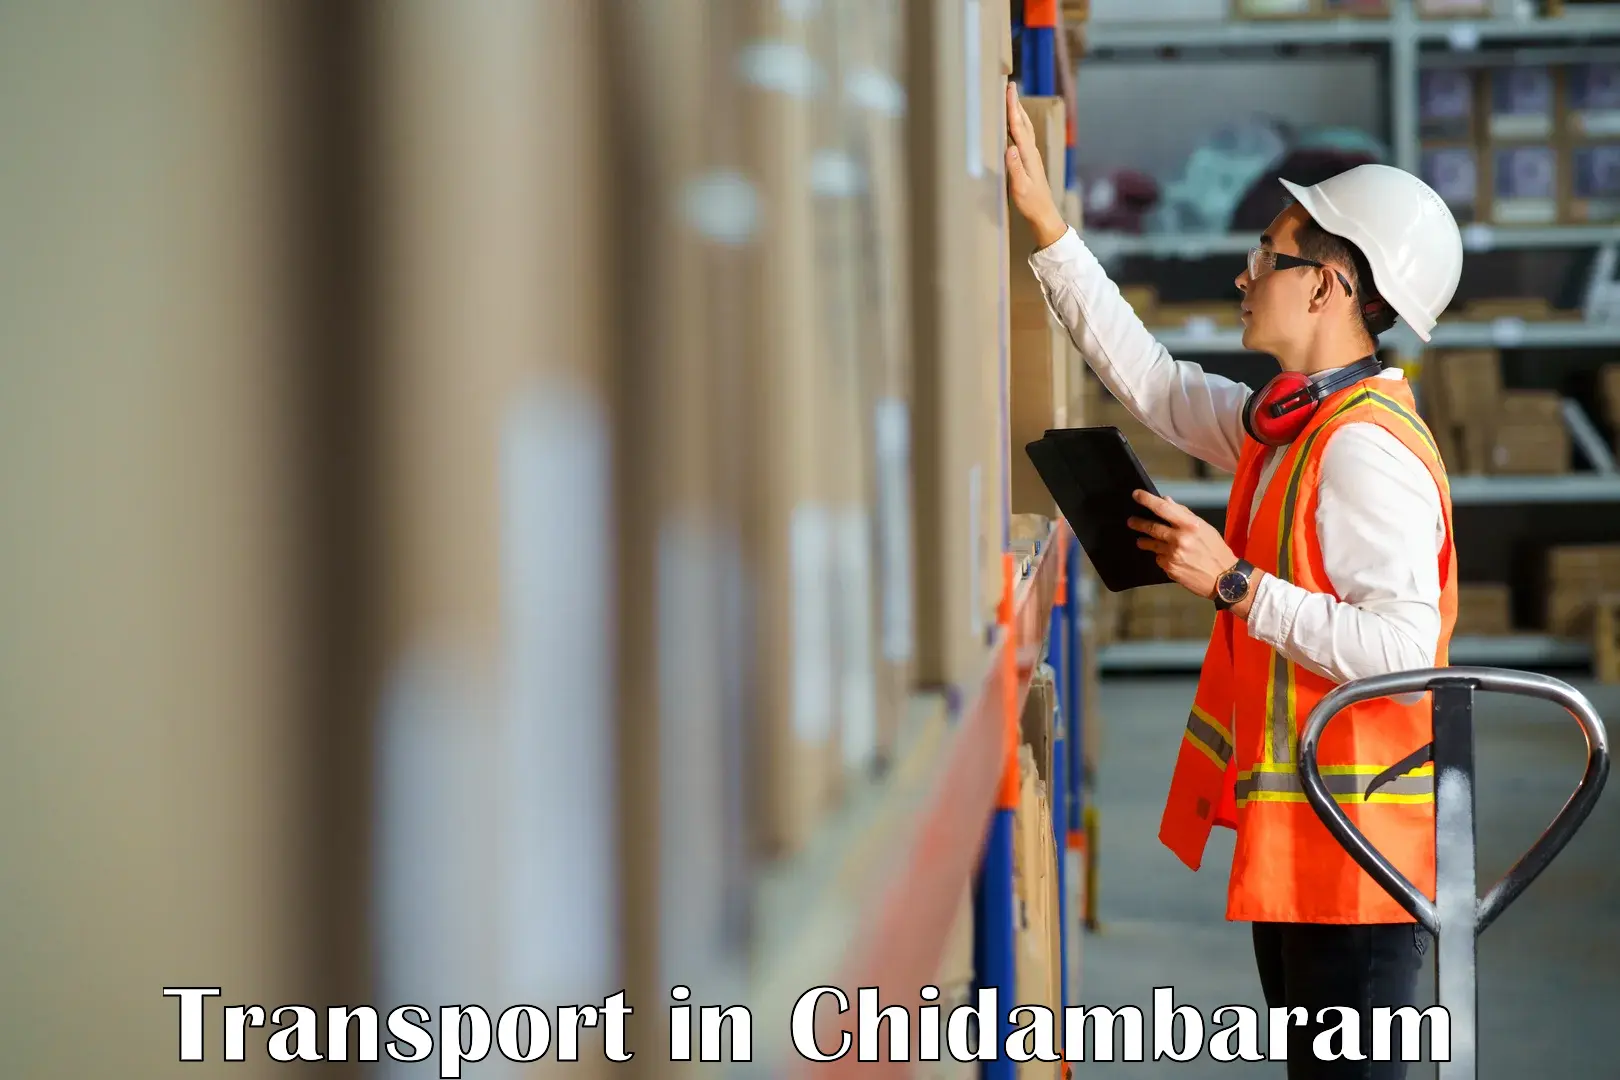 Transportation services in Chidambaram